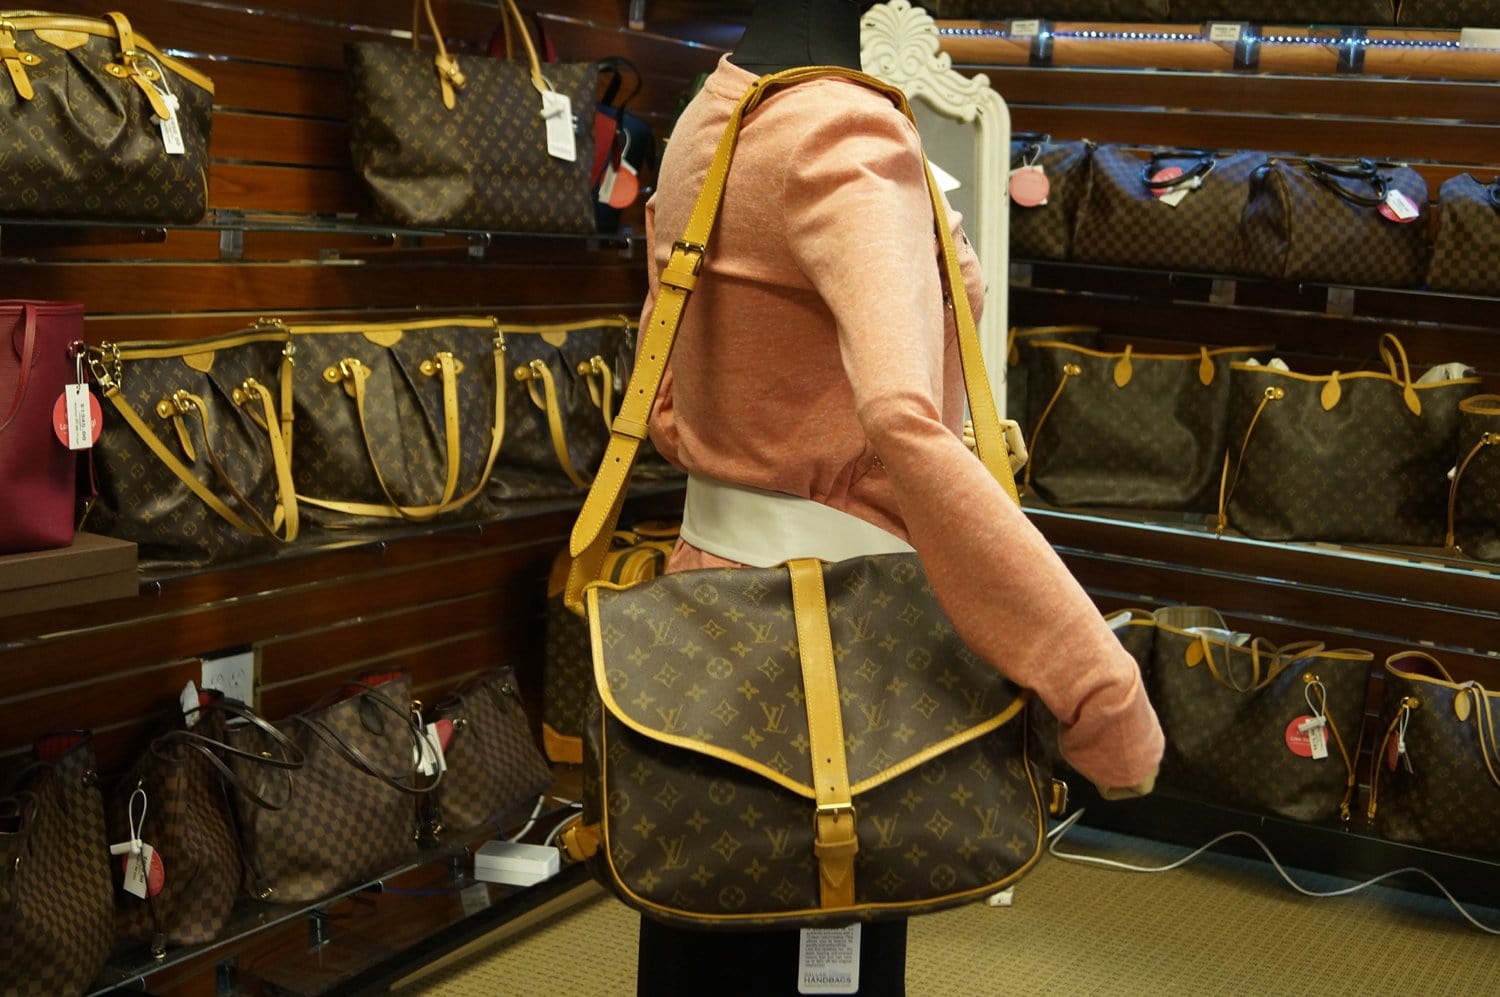 Louis Vuitton, Bags, Louis Vuitton Shoulder Bag Saumur 35 Browns Monogram